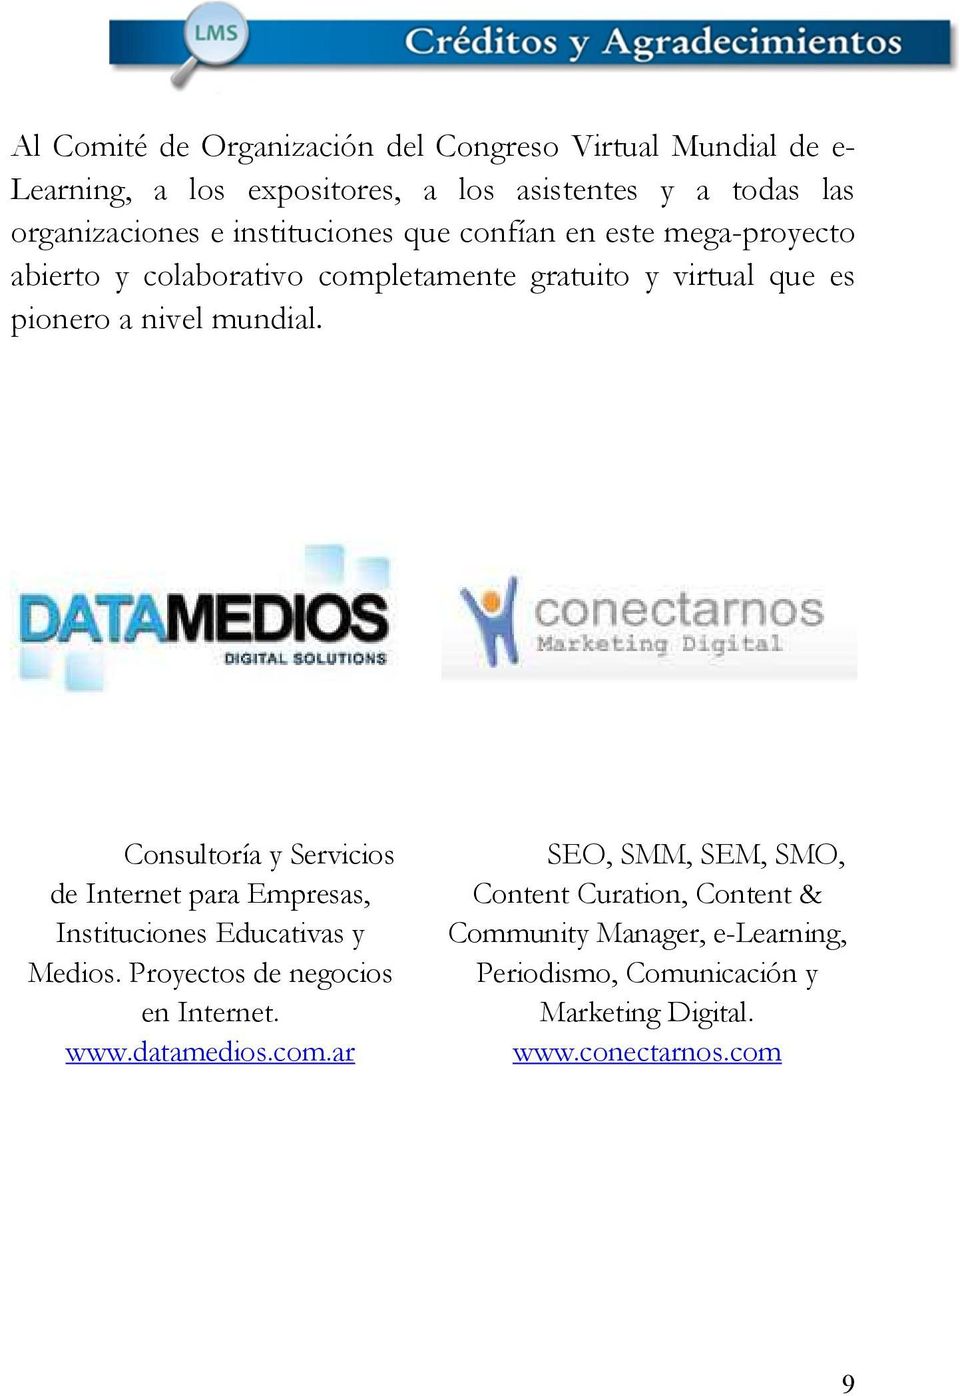 Consultoría y Servicios de Internet para Empresas, Instituciones Educativas y Medios. Proyectos de negocios en Internet. www.datamedios.com.